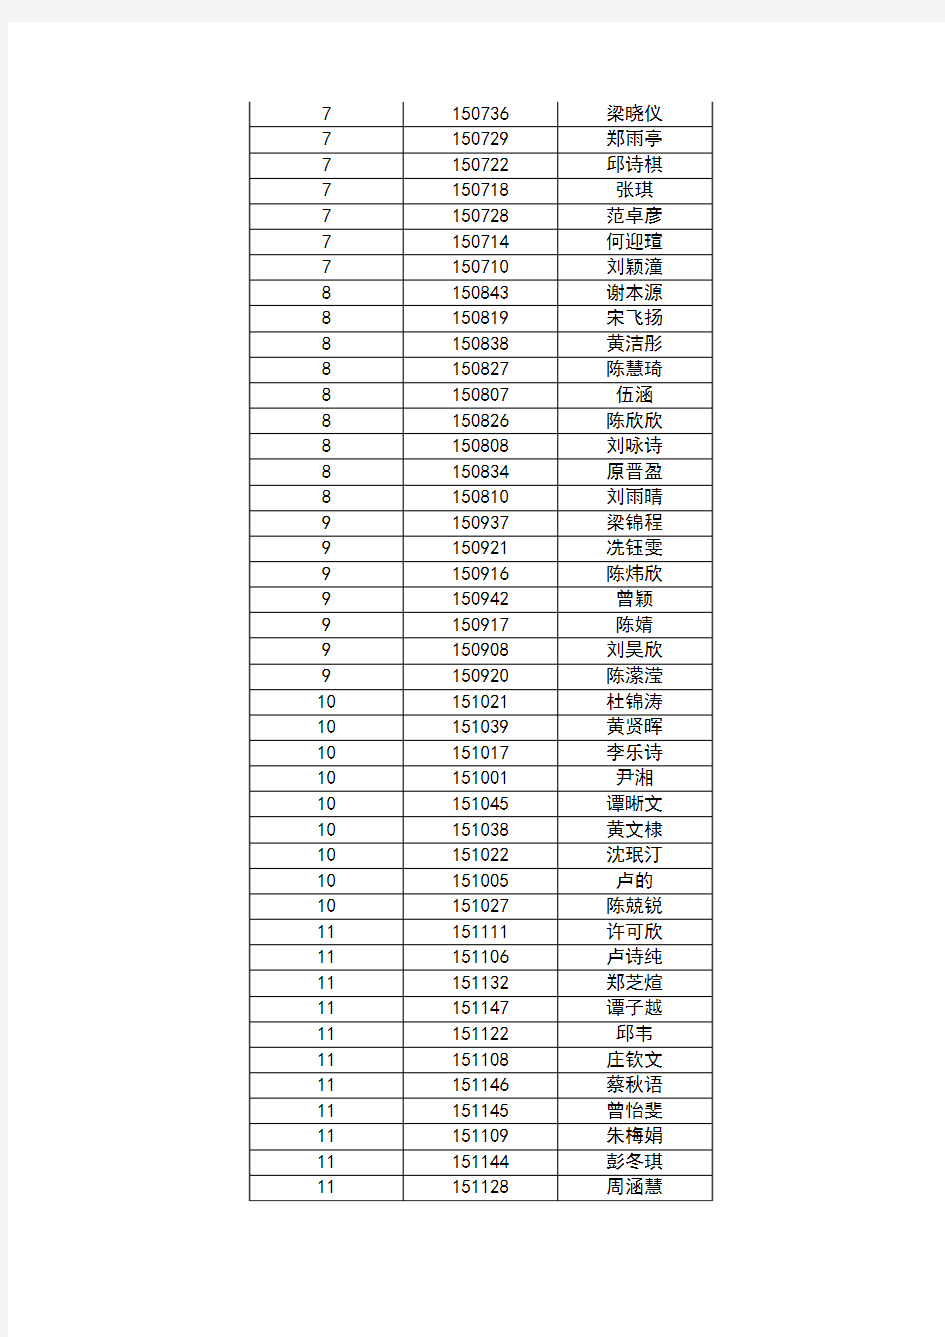 广东广雅中学2015-2016学年新高二博雅岭南班及数理创新班选拔加试安排及资格名单